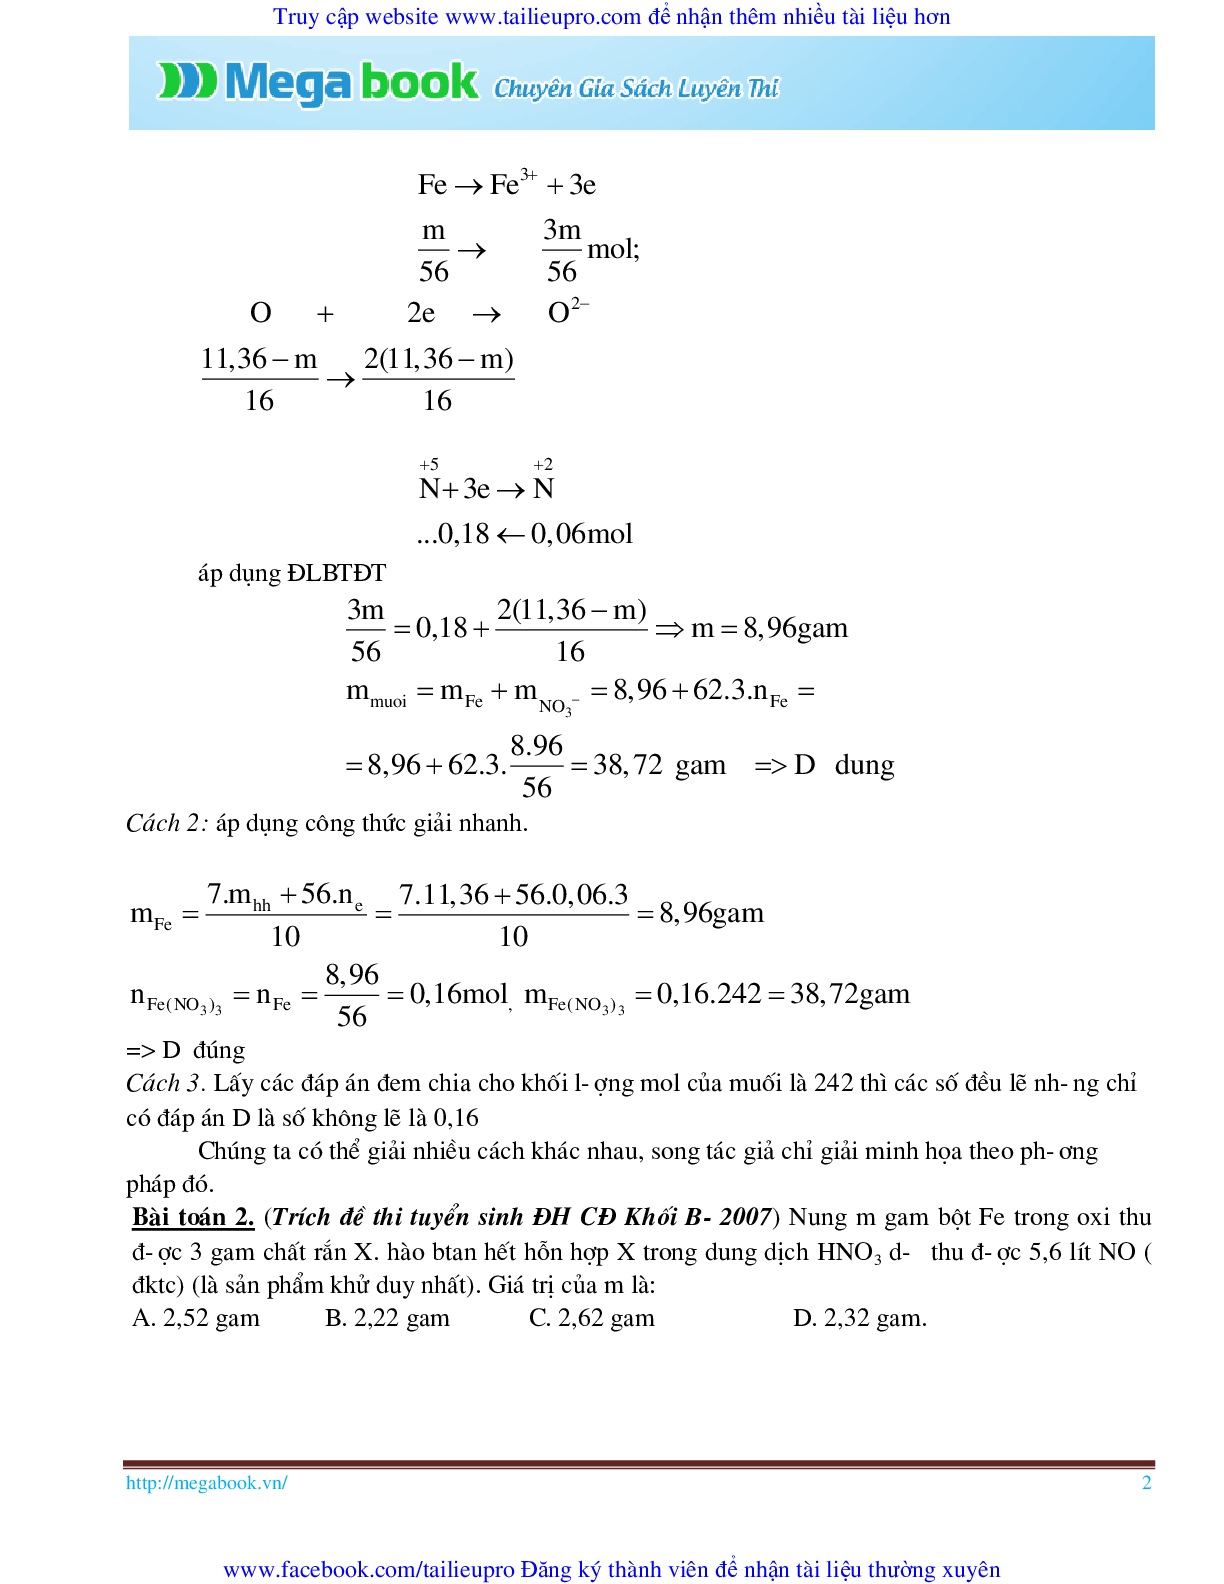 10 Bí quyết chinh phục phương pháp giải toán chủ chốt môn Hóa học ôn thi THPT Quốc Gia (trang 2)